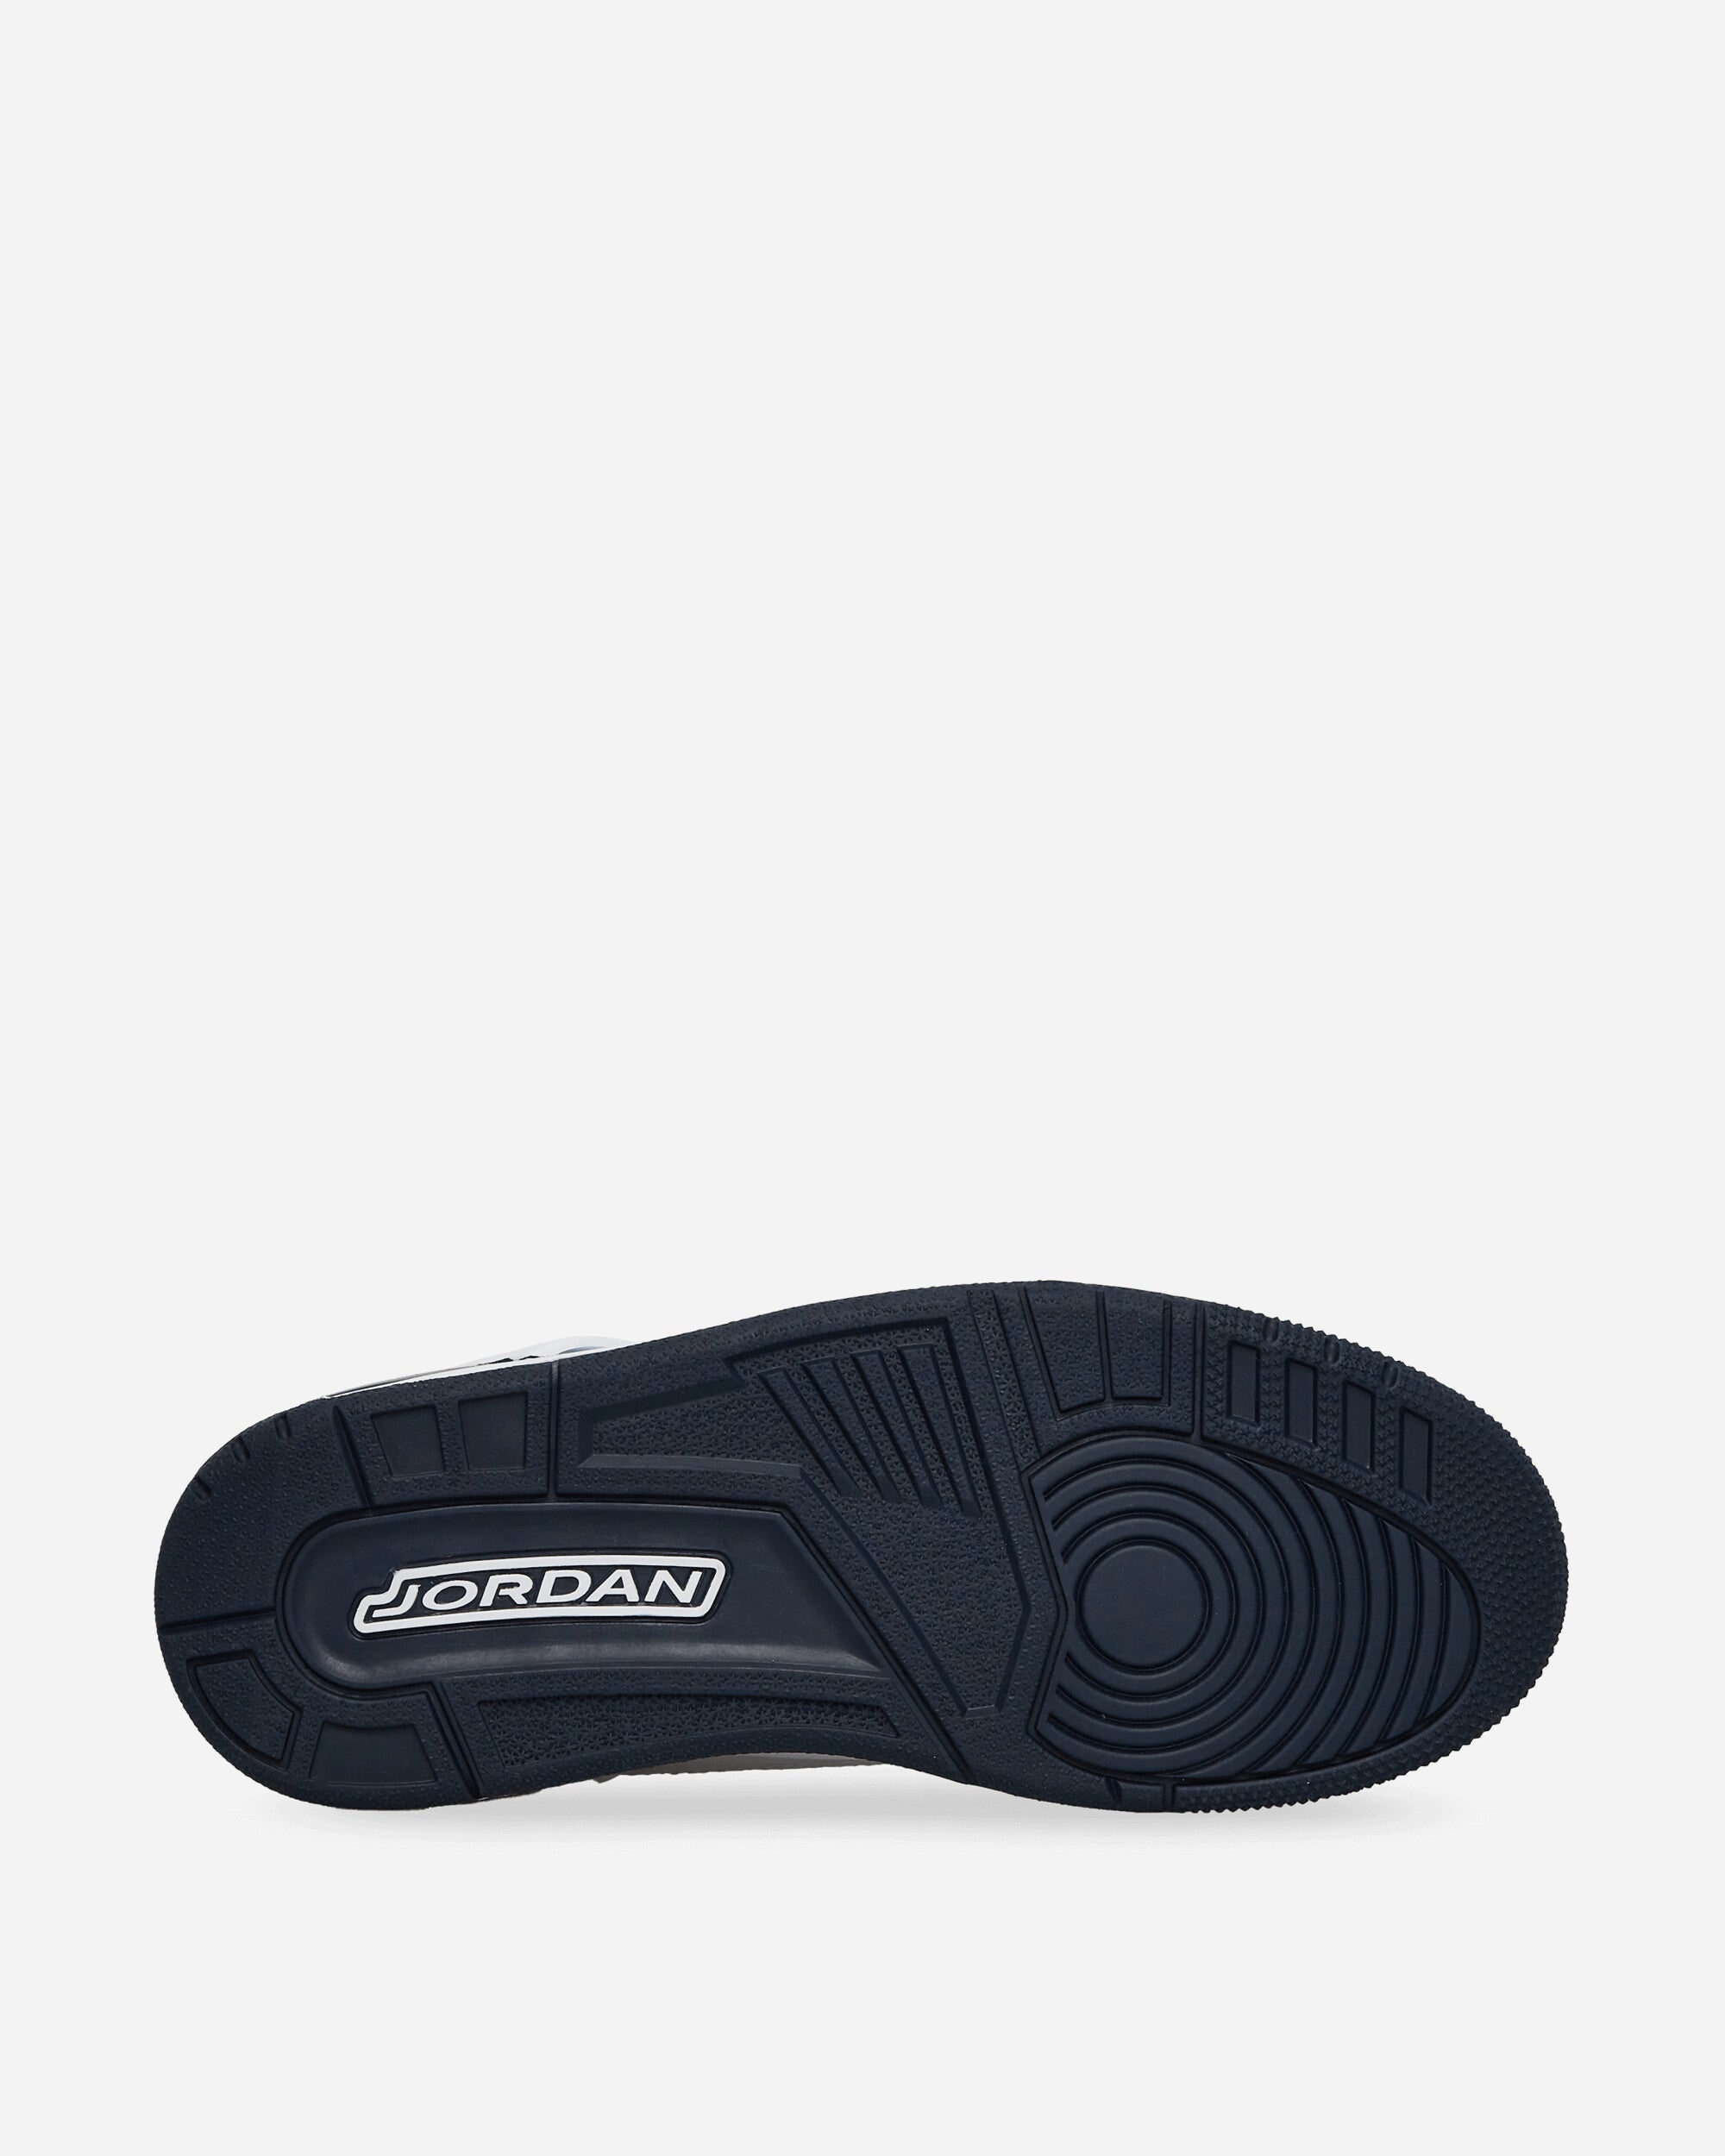 Nike Jordan Jordan Spizike Low White/Obsidian Sneakers Low FQ1759-104